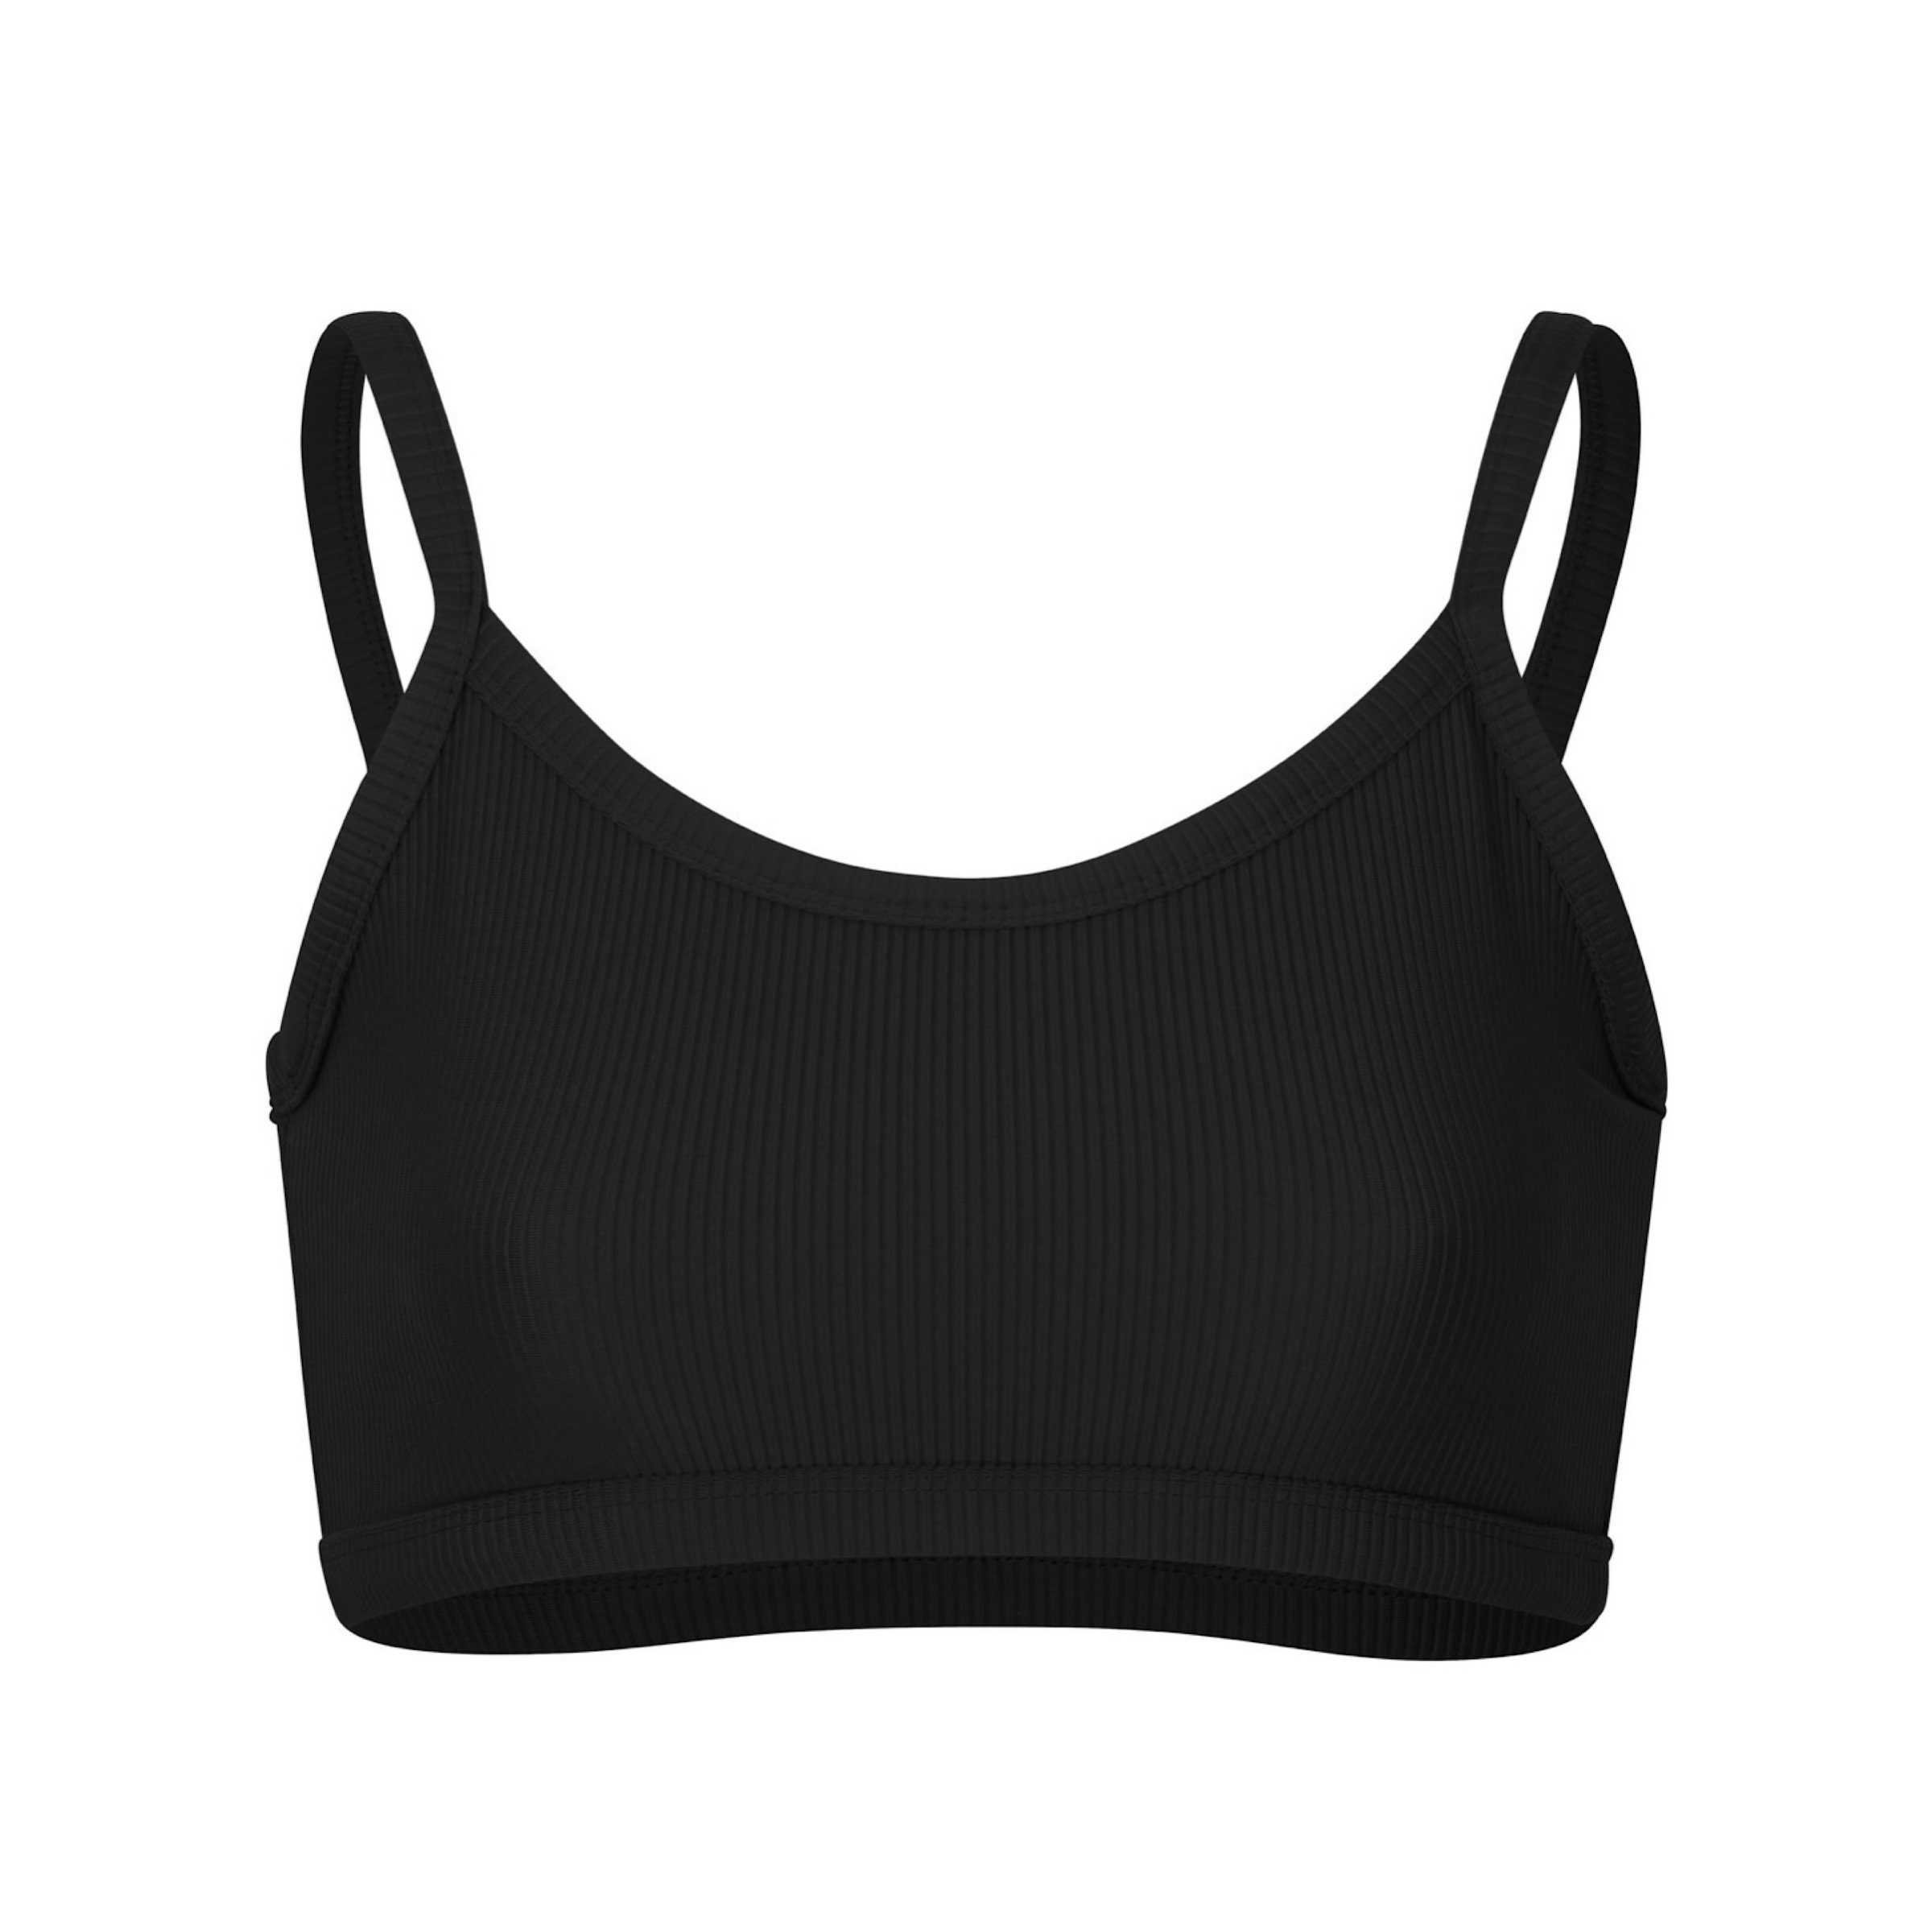 MALU TOP Black Bikini Top / Cute Bikini / Sporty Swimwear / - Etsy UK